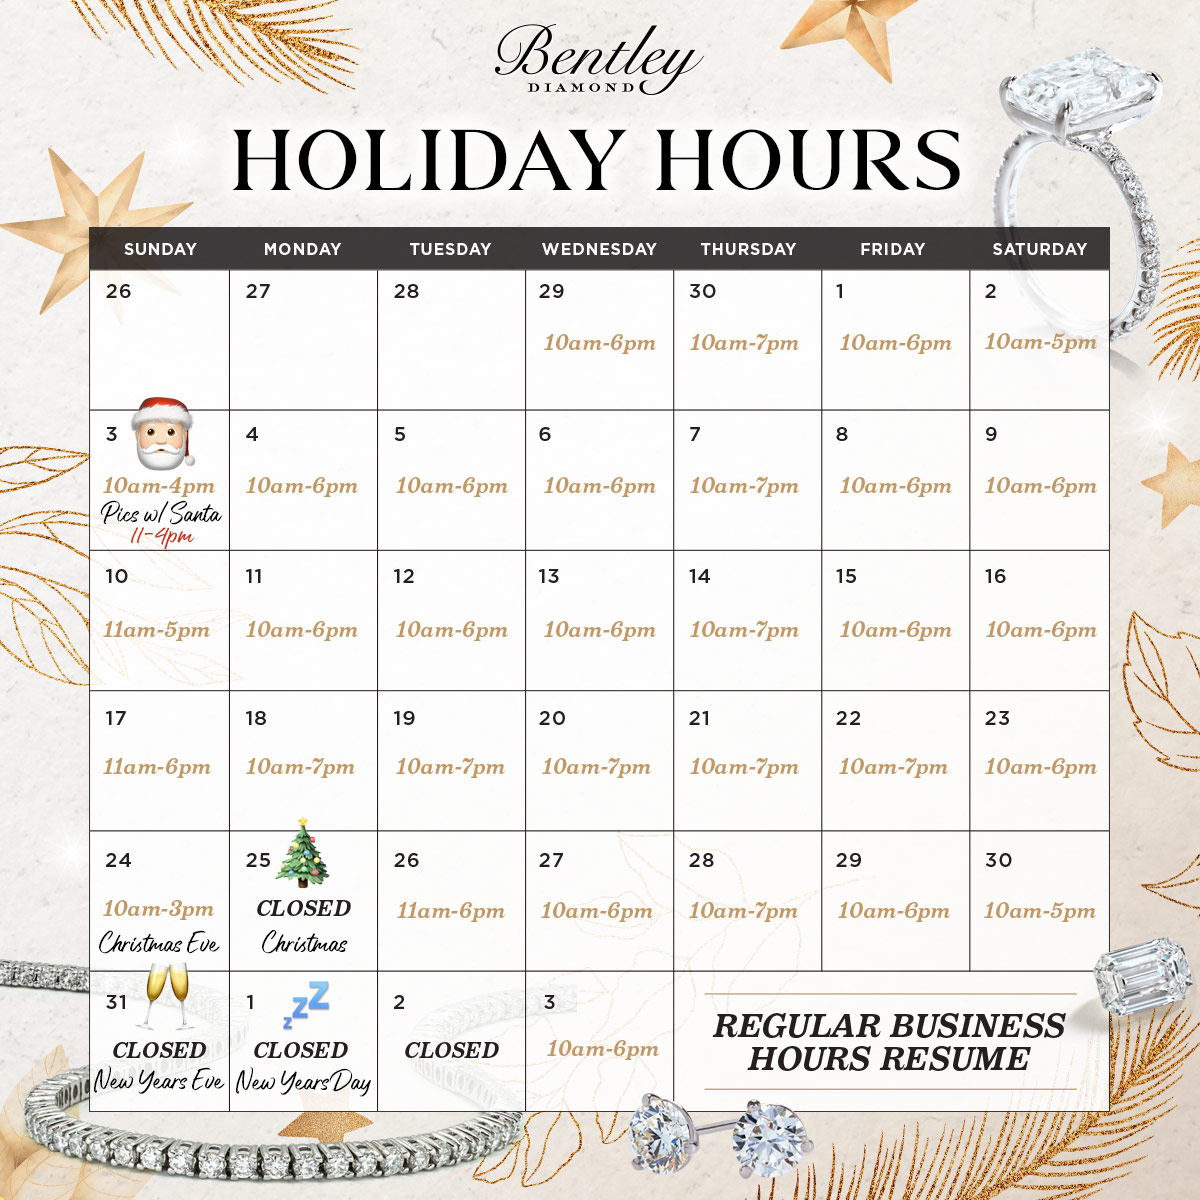 Bentley Diamond - Holiday Hours 2017